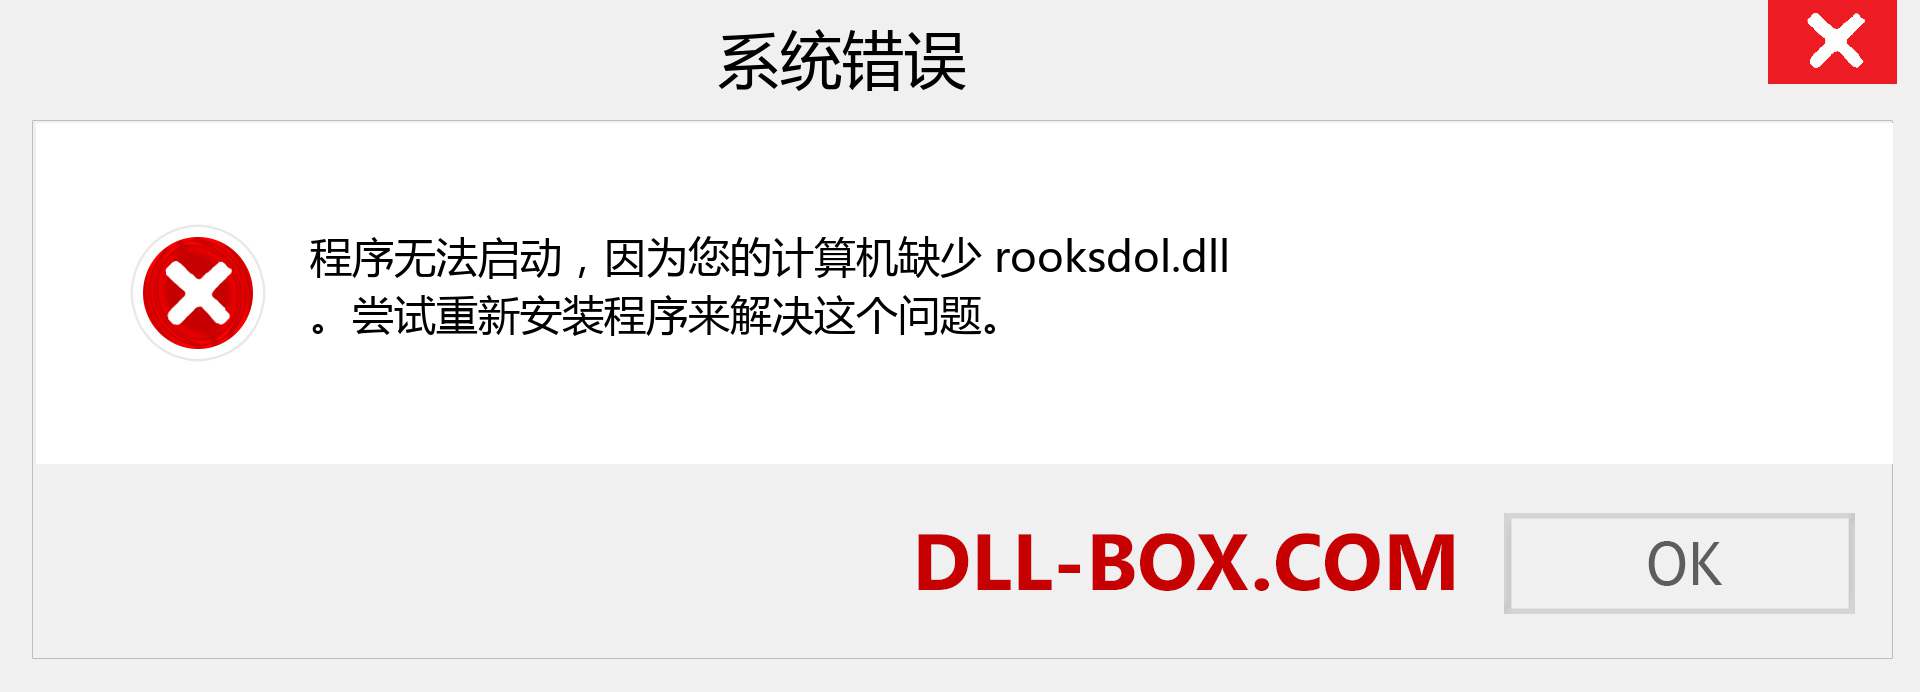 rooksdol.dll 文件丢失？。 适用于 Windows 7、8、10 的下载 - 修复 Windows、照片、图像上的 rooksdol dll 丢失错误